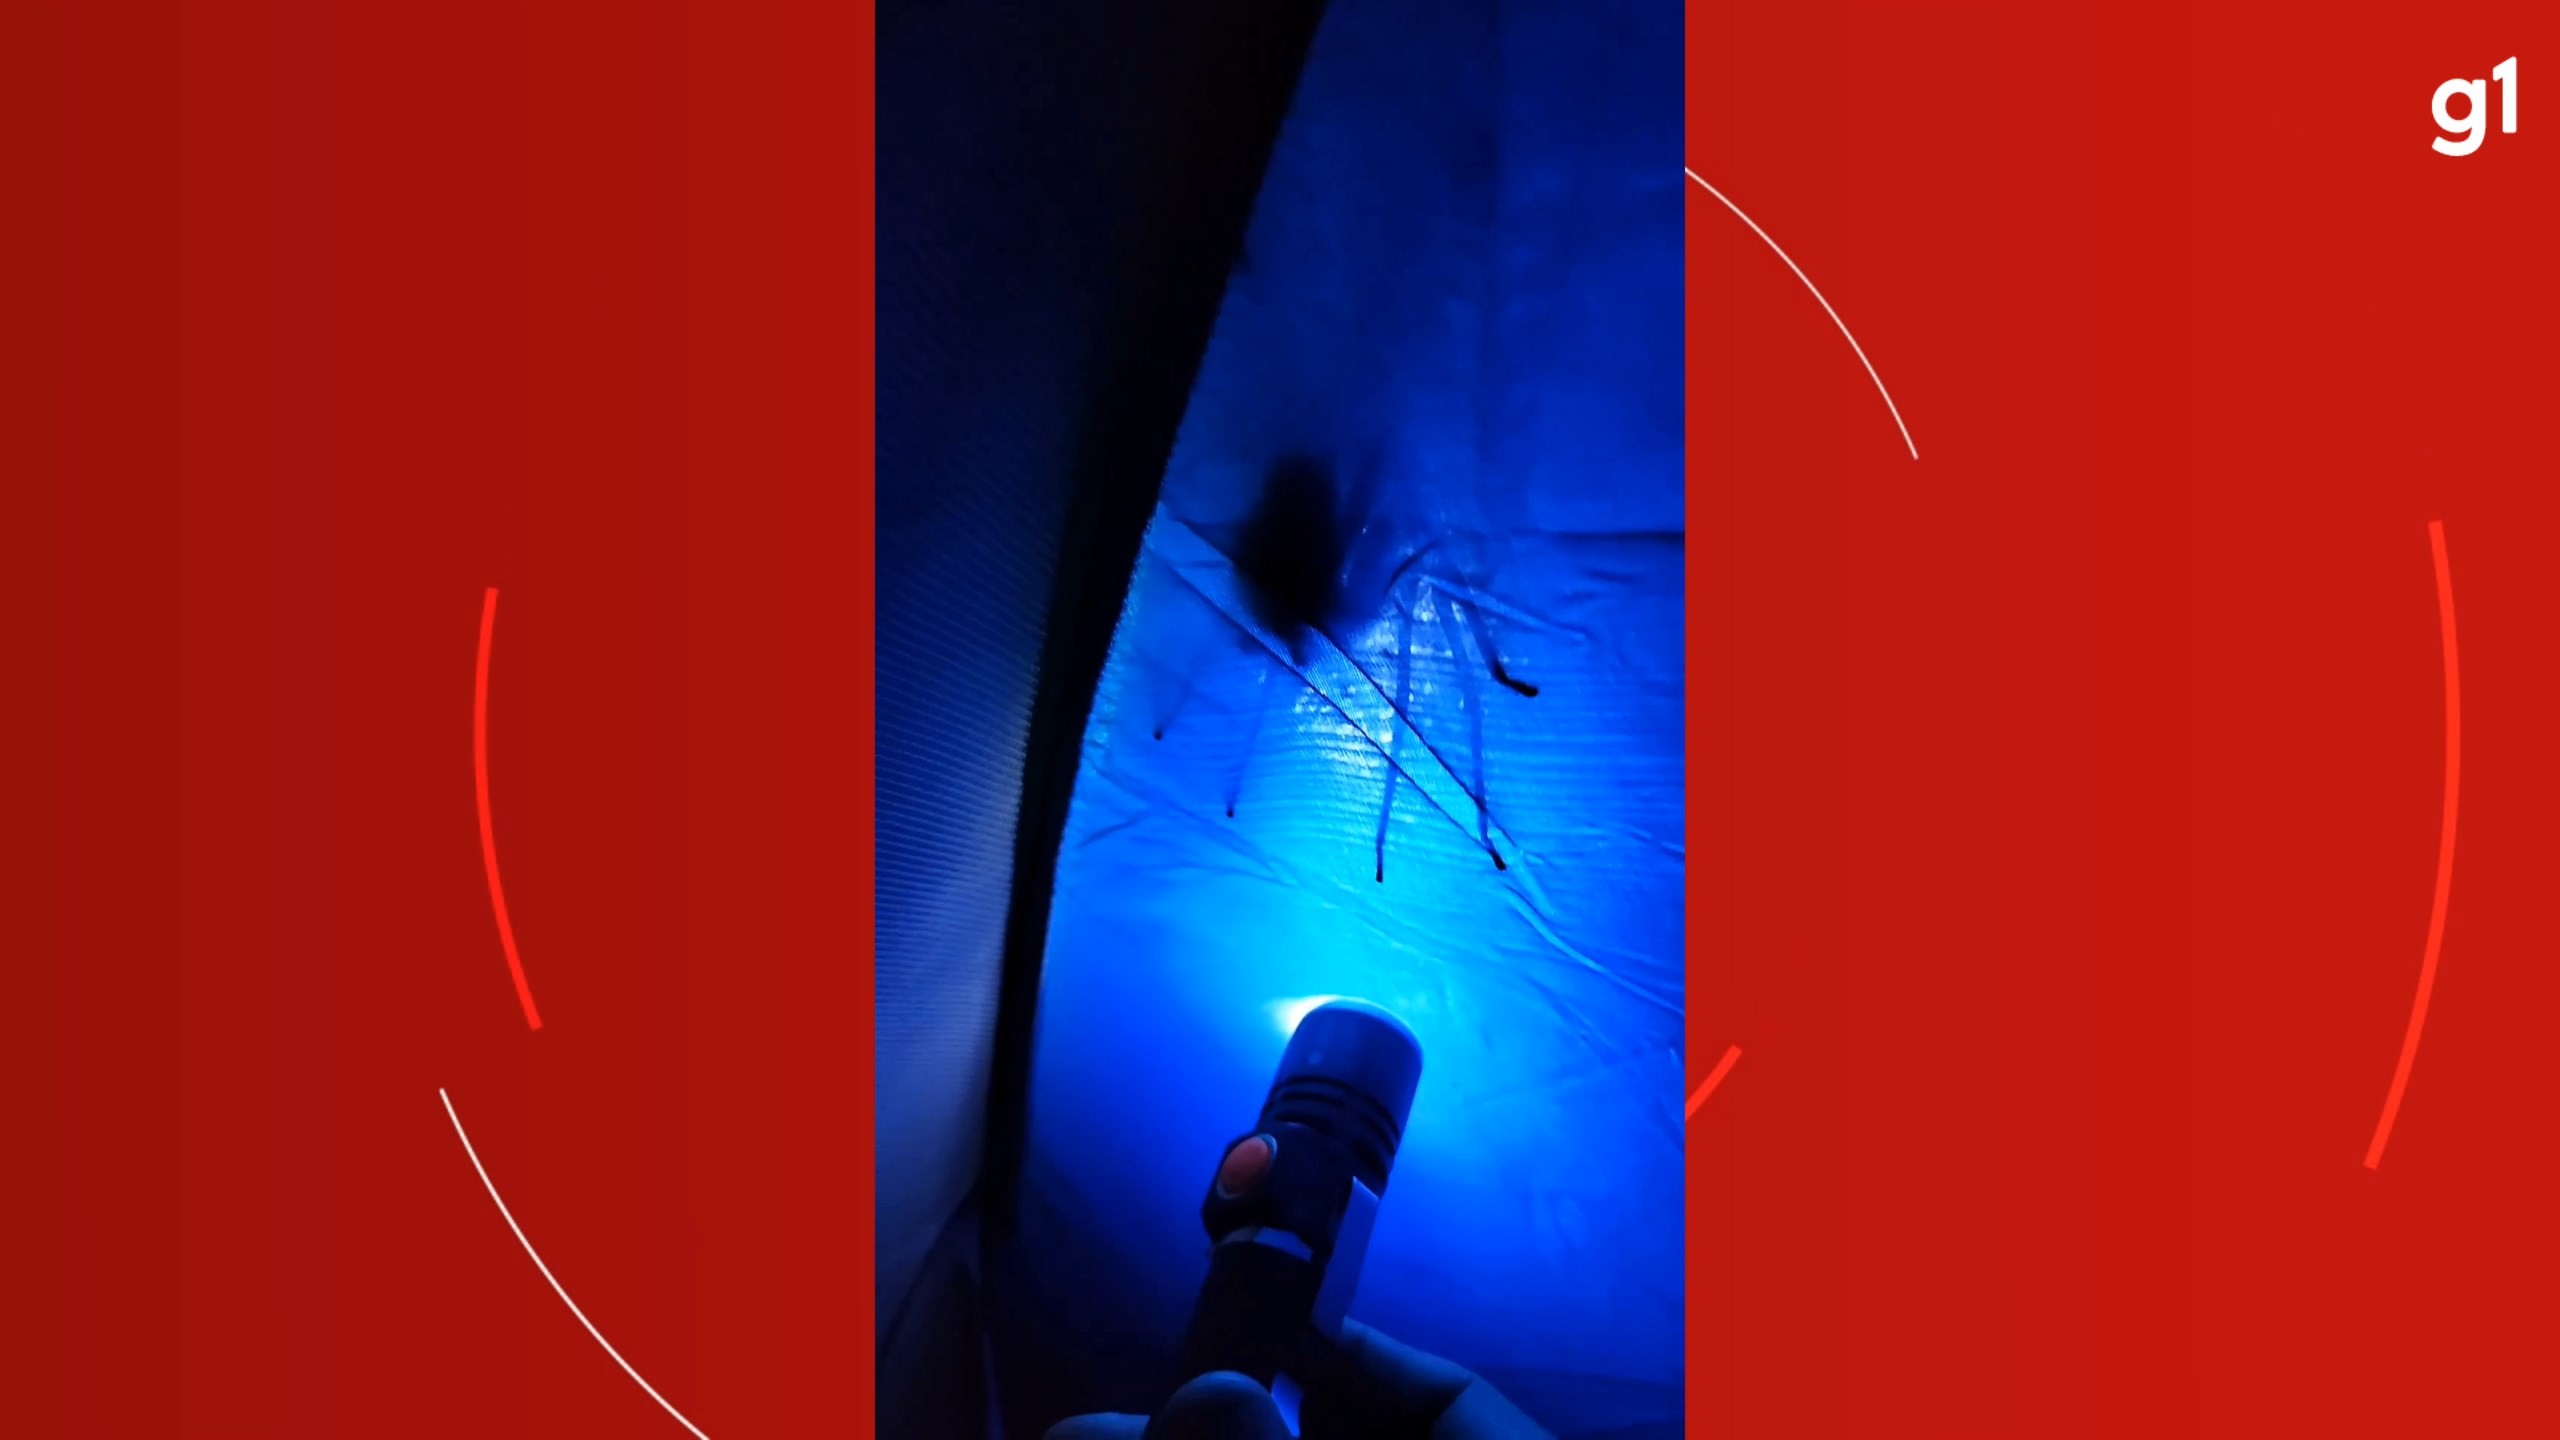 VÍDEO: Aranha gigante que pode saltar até 40 cm aparece em barraca de empresário que acampava em morro na Serra, ES